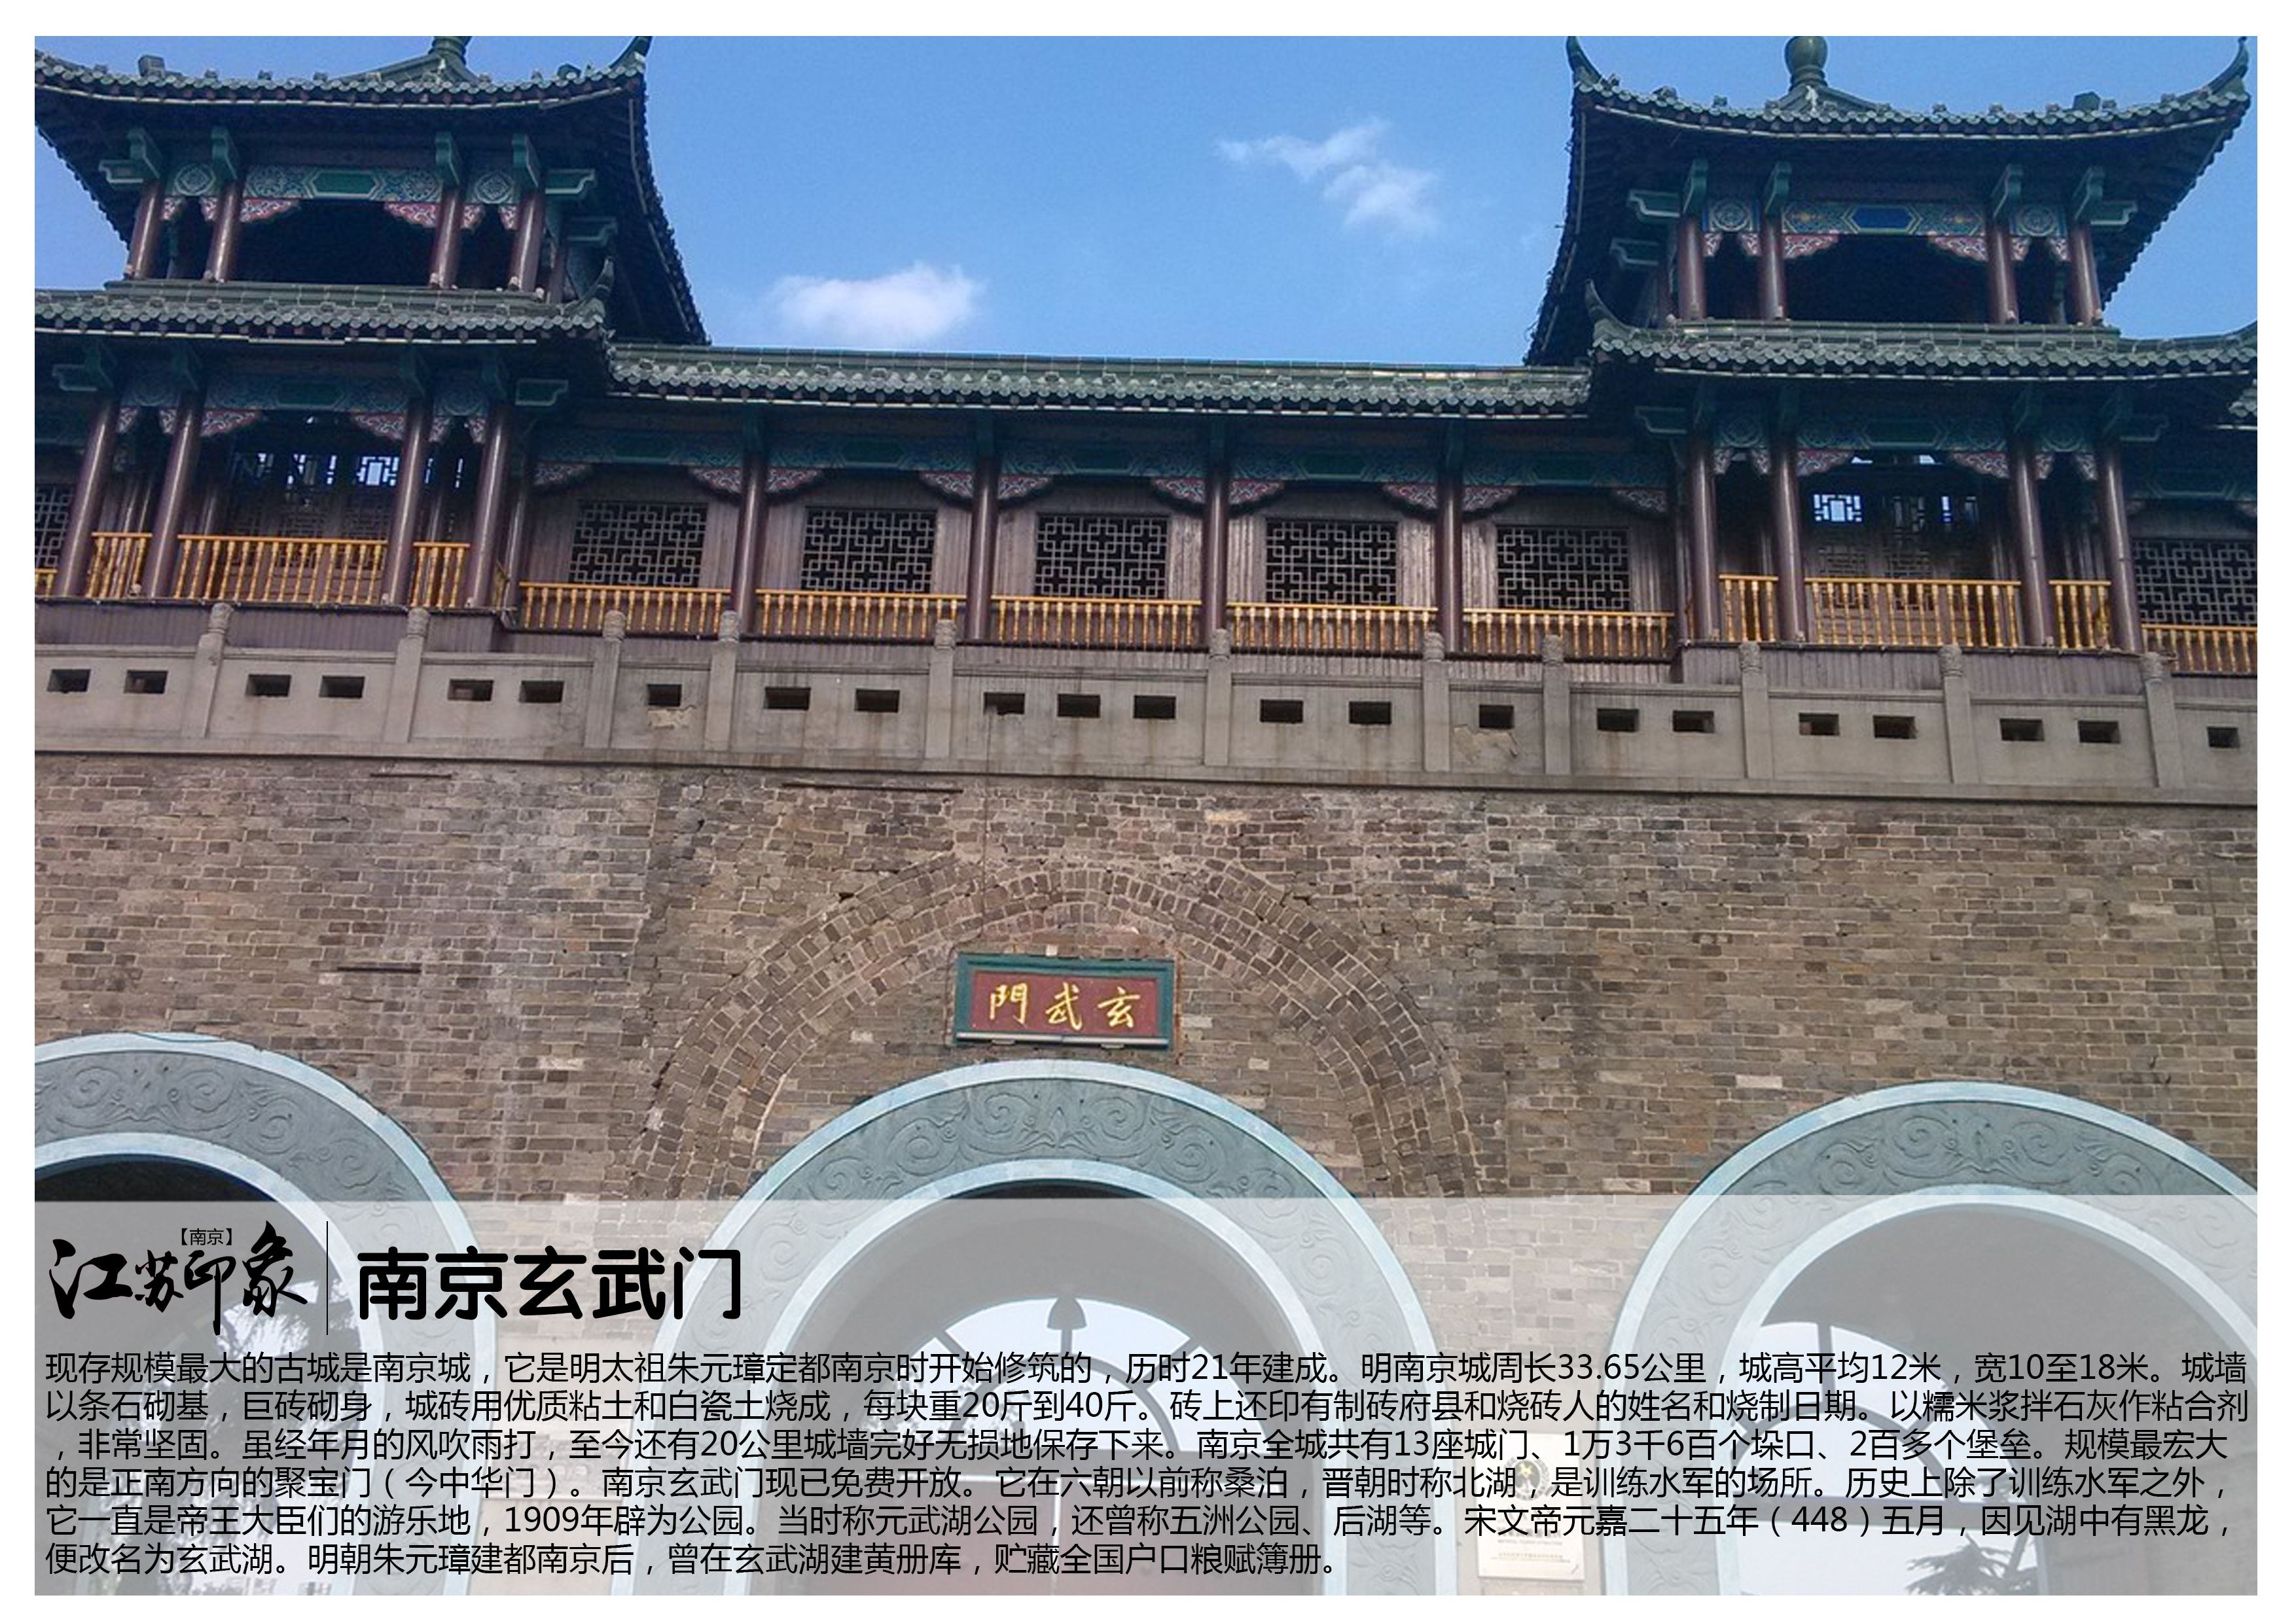 南京市景点排名大全图片